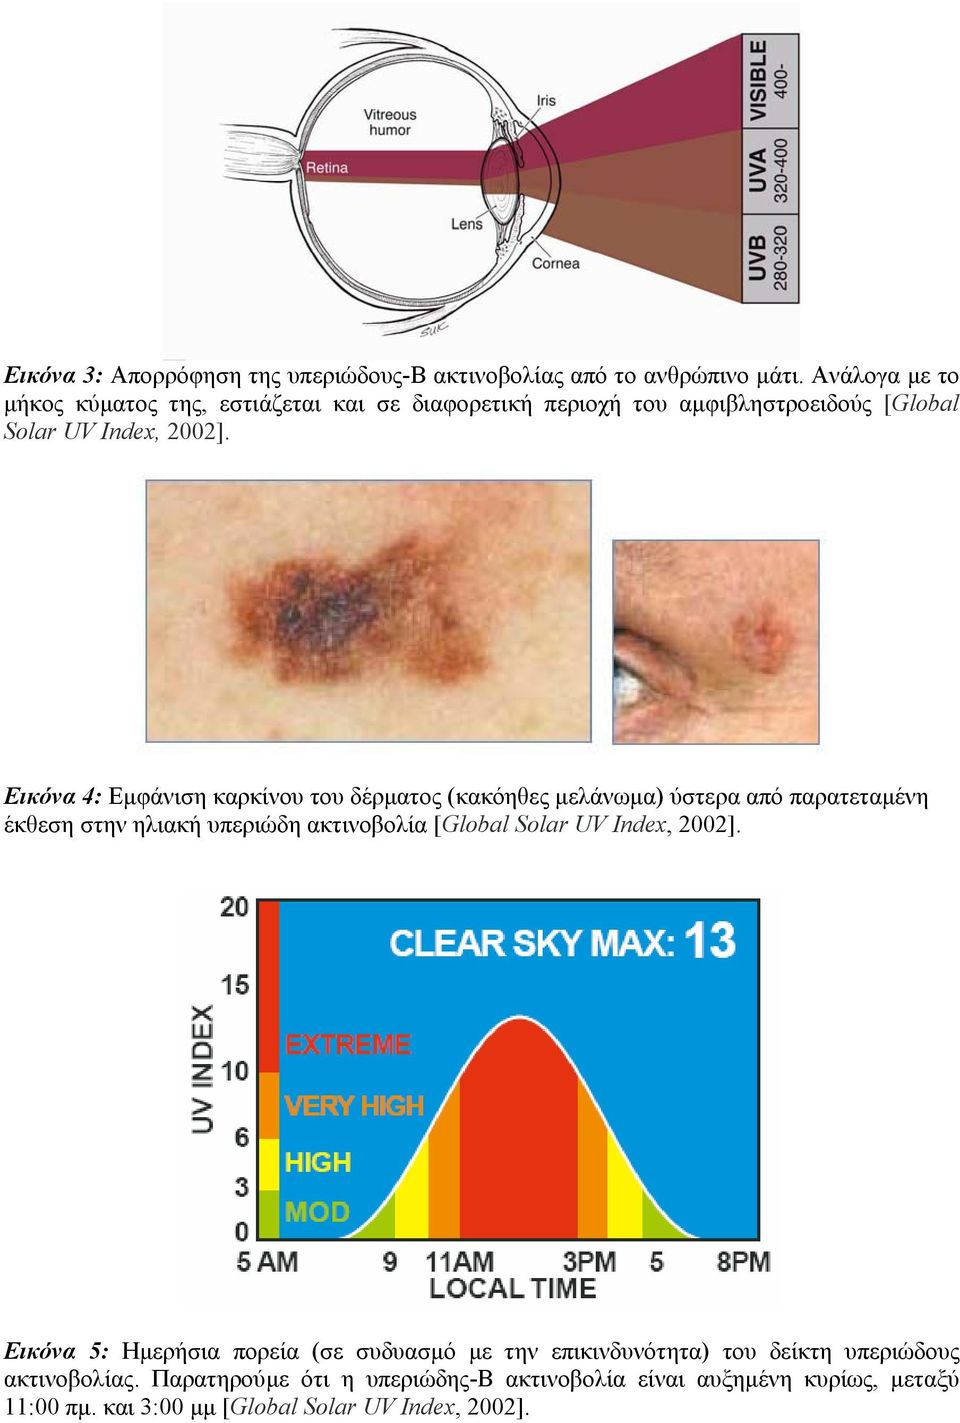 Εικόνα 4: Εµφάνιση καρκίνου του δέρµατος (κακόηθες µελάνωµα) ύστερα από παρατεταµένη έκθεση στην ηλιακή υπεριώδη ακτινοβολία [Global Solar UV